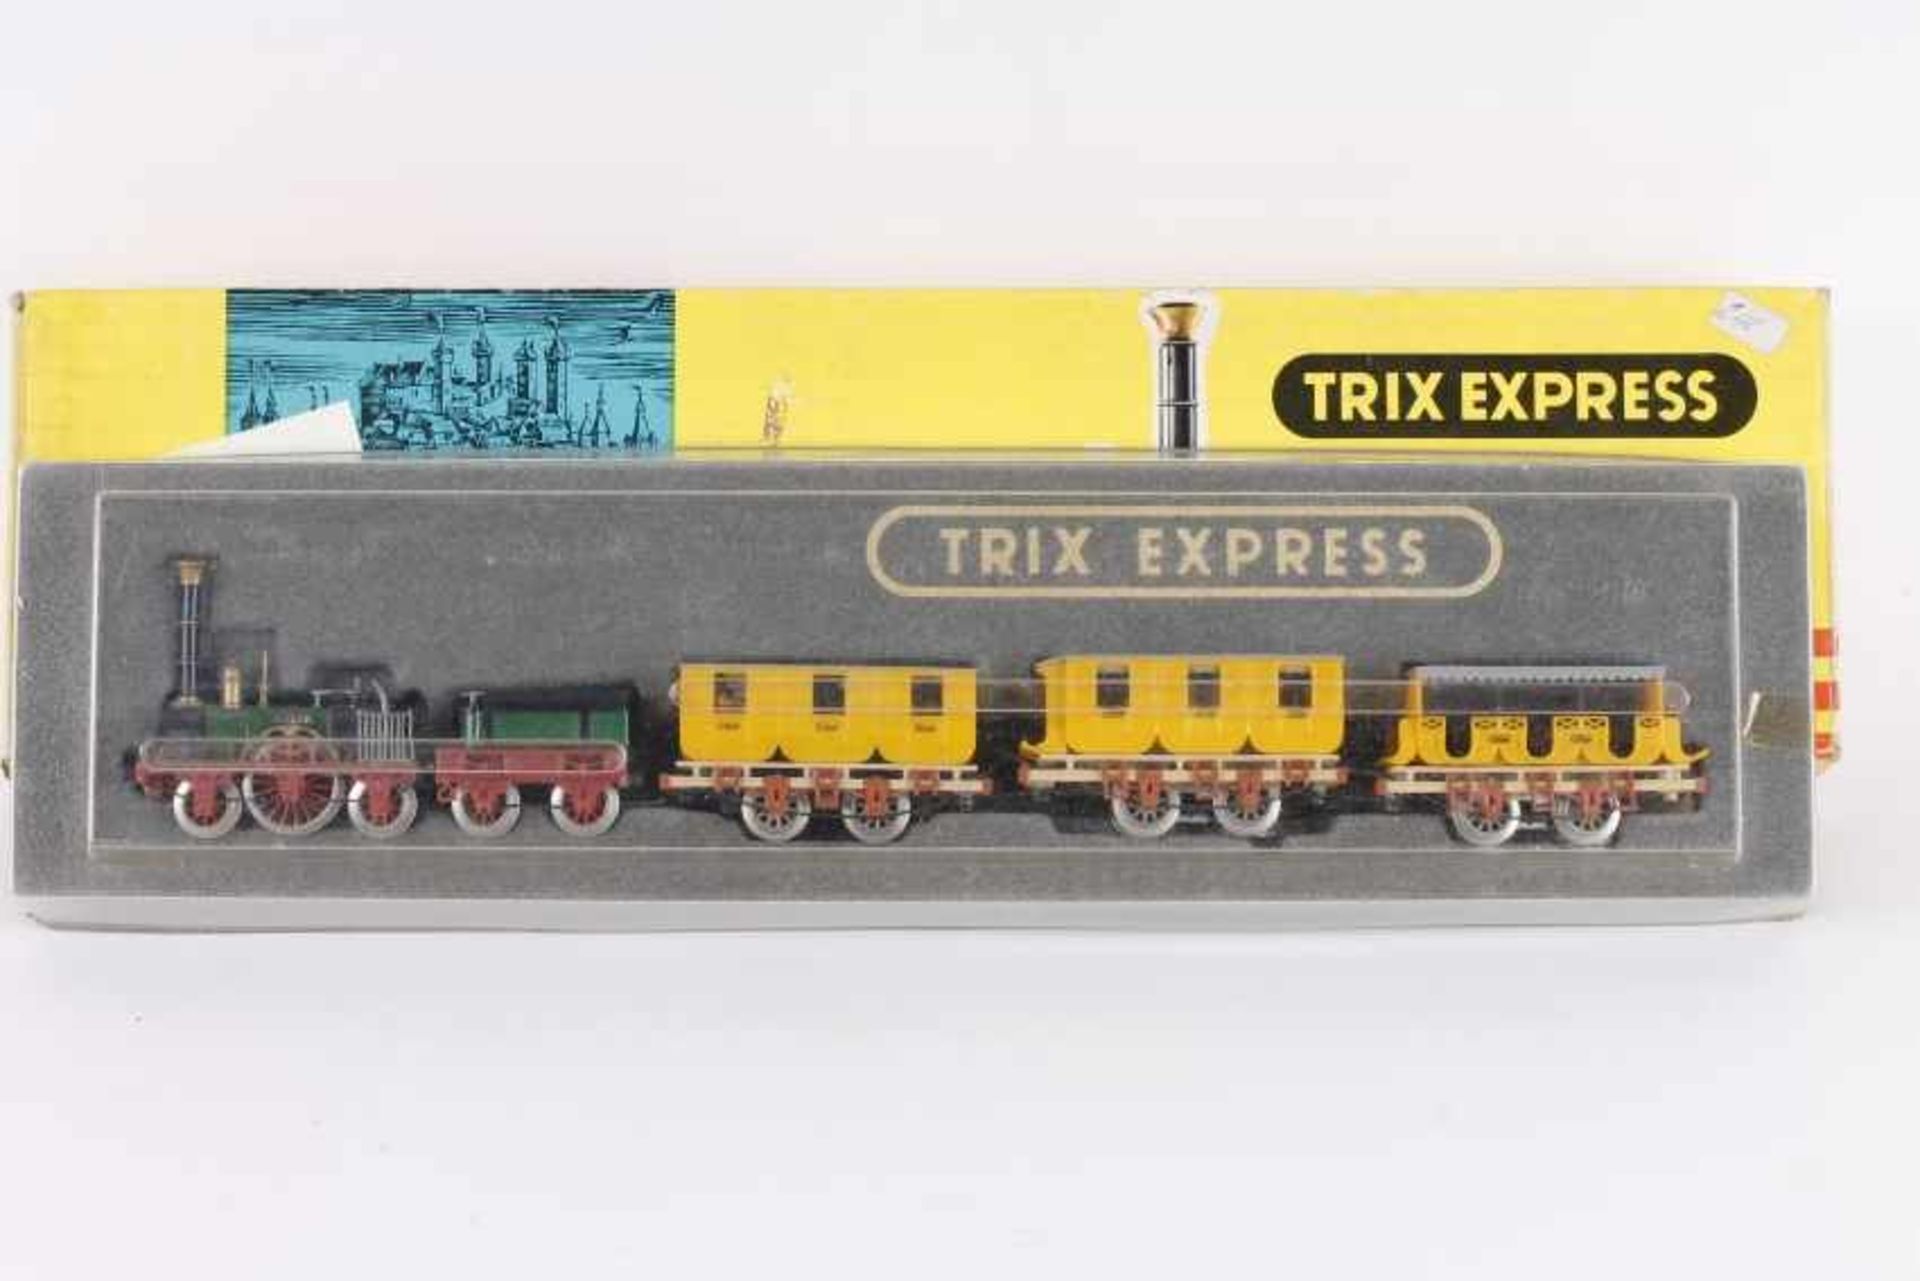 Trix Express 1530, "Der ADLER"Trix Express 1530, "Der ADLER", Dampflok, Tender, drei gelbe Wagen,